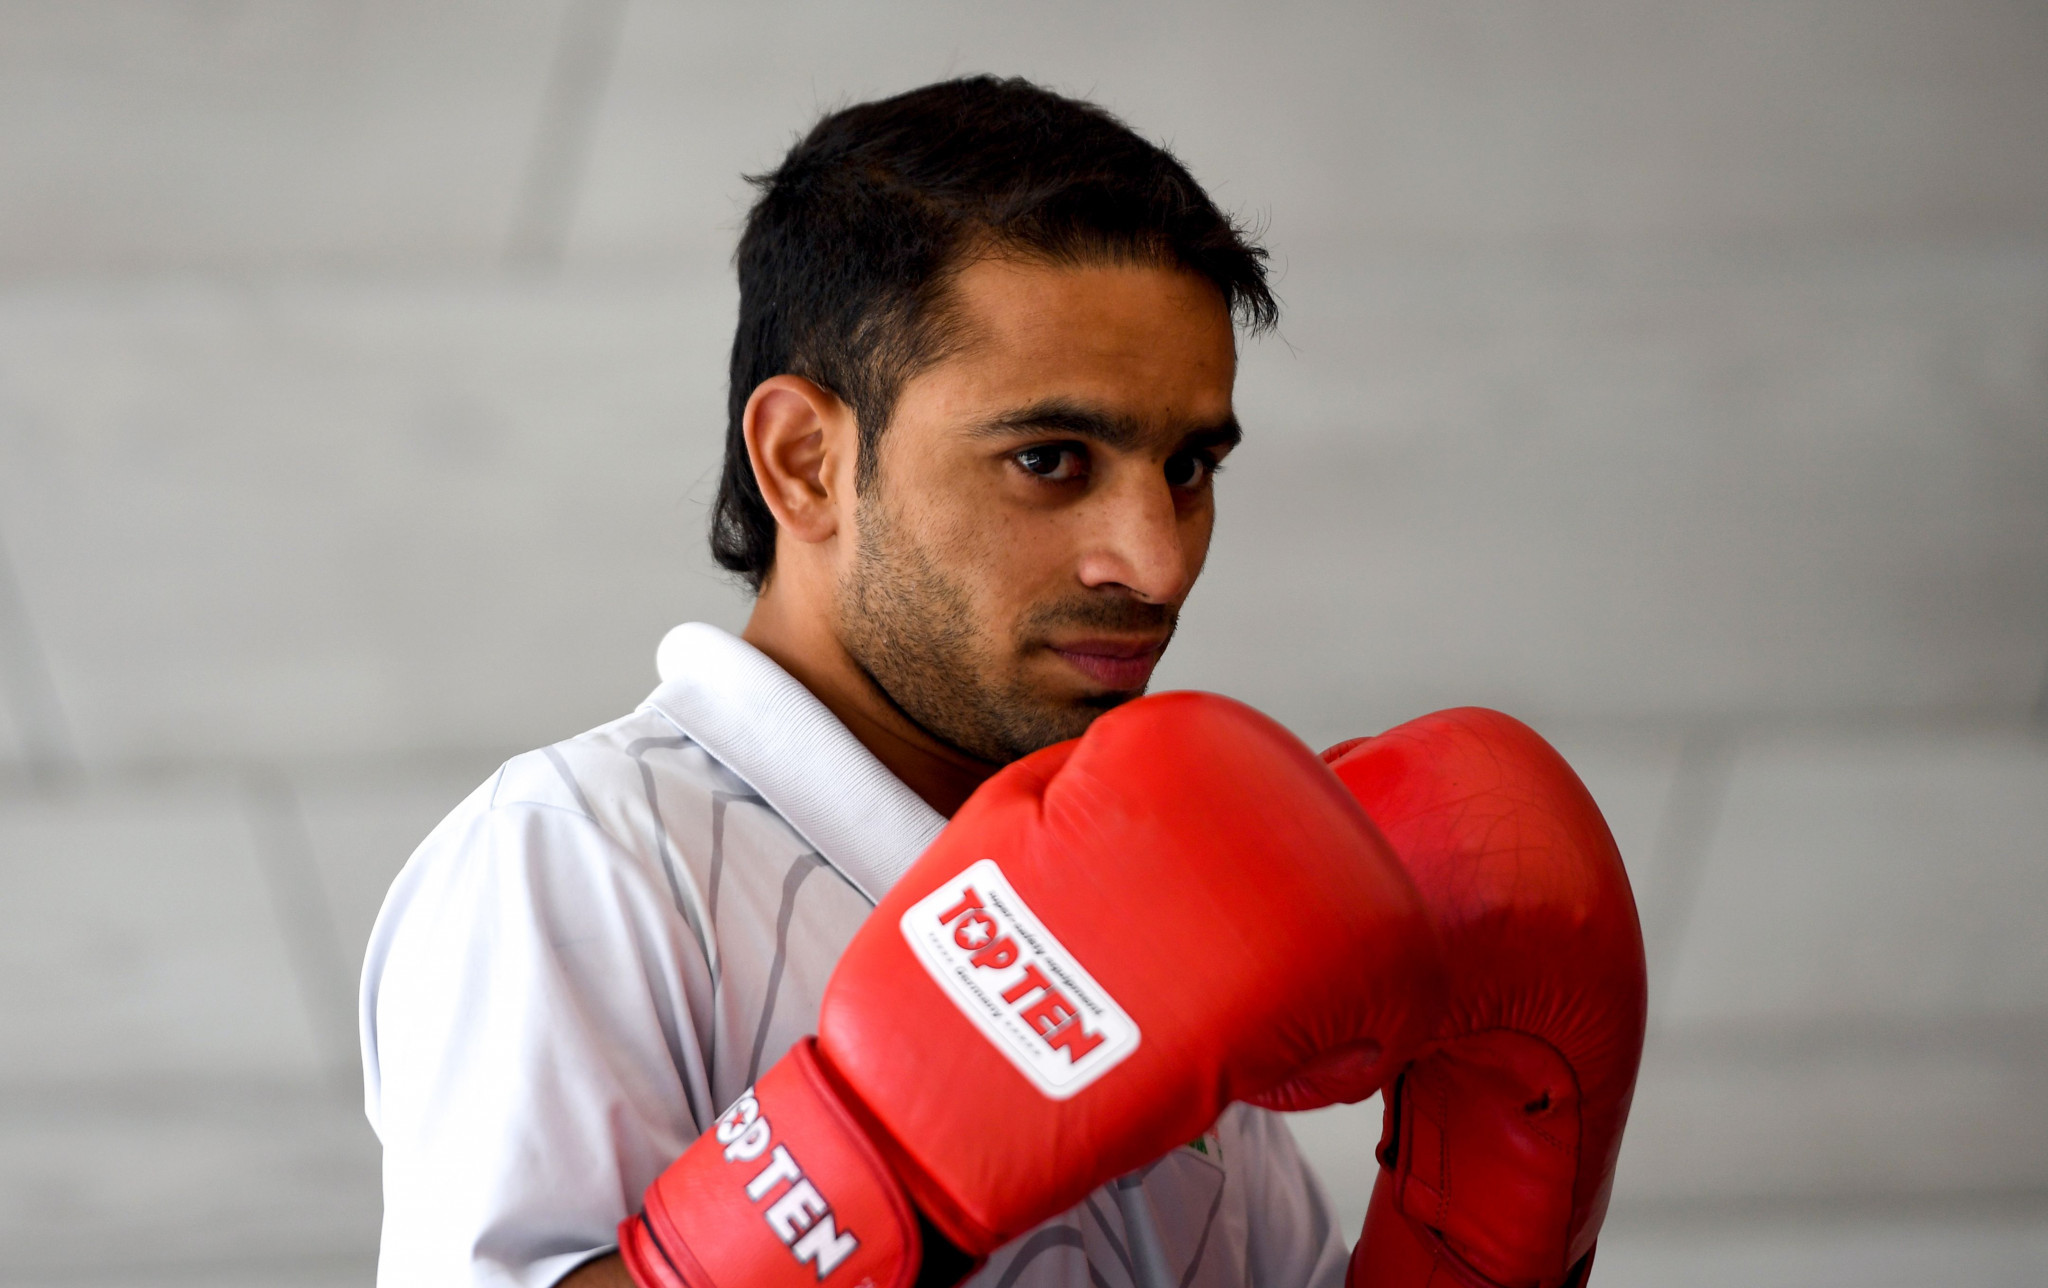 Boxing Federation of India nominates athletes for prestigious national awards